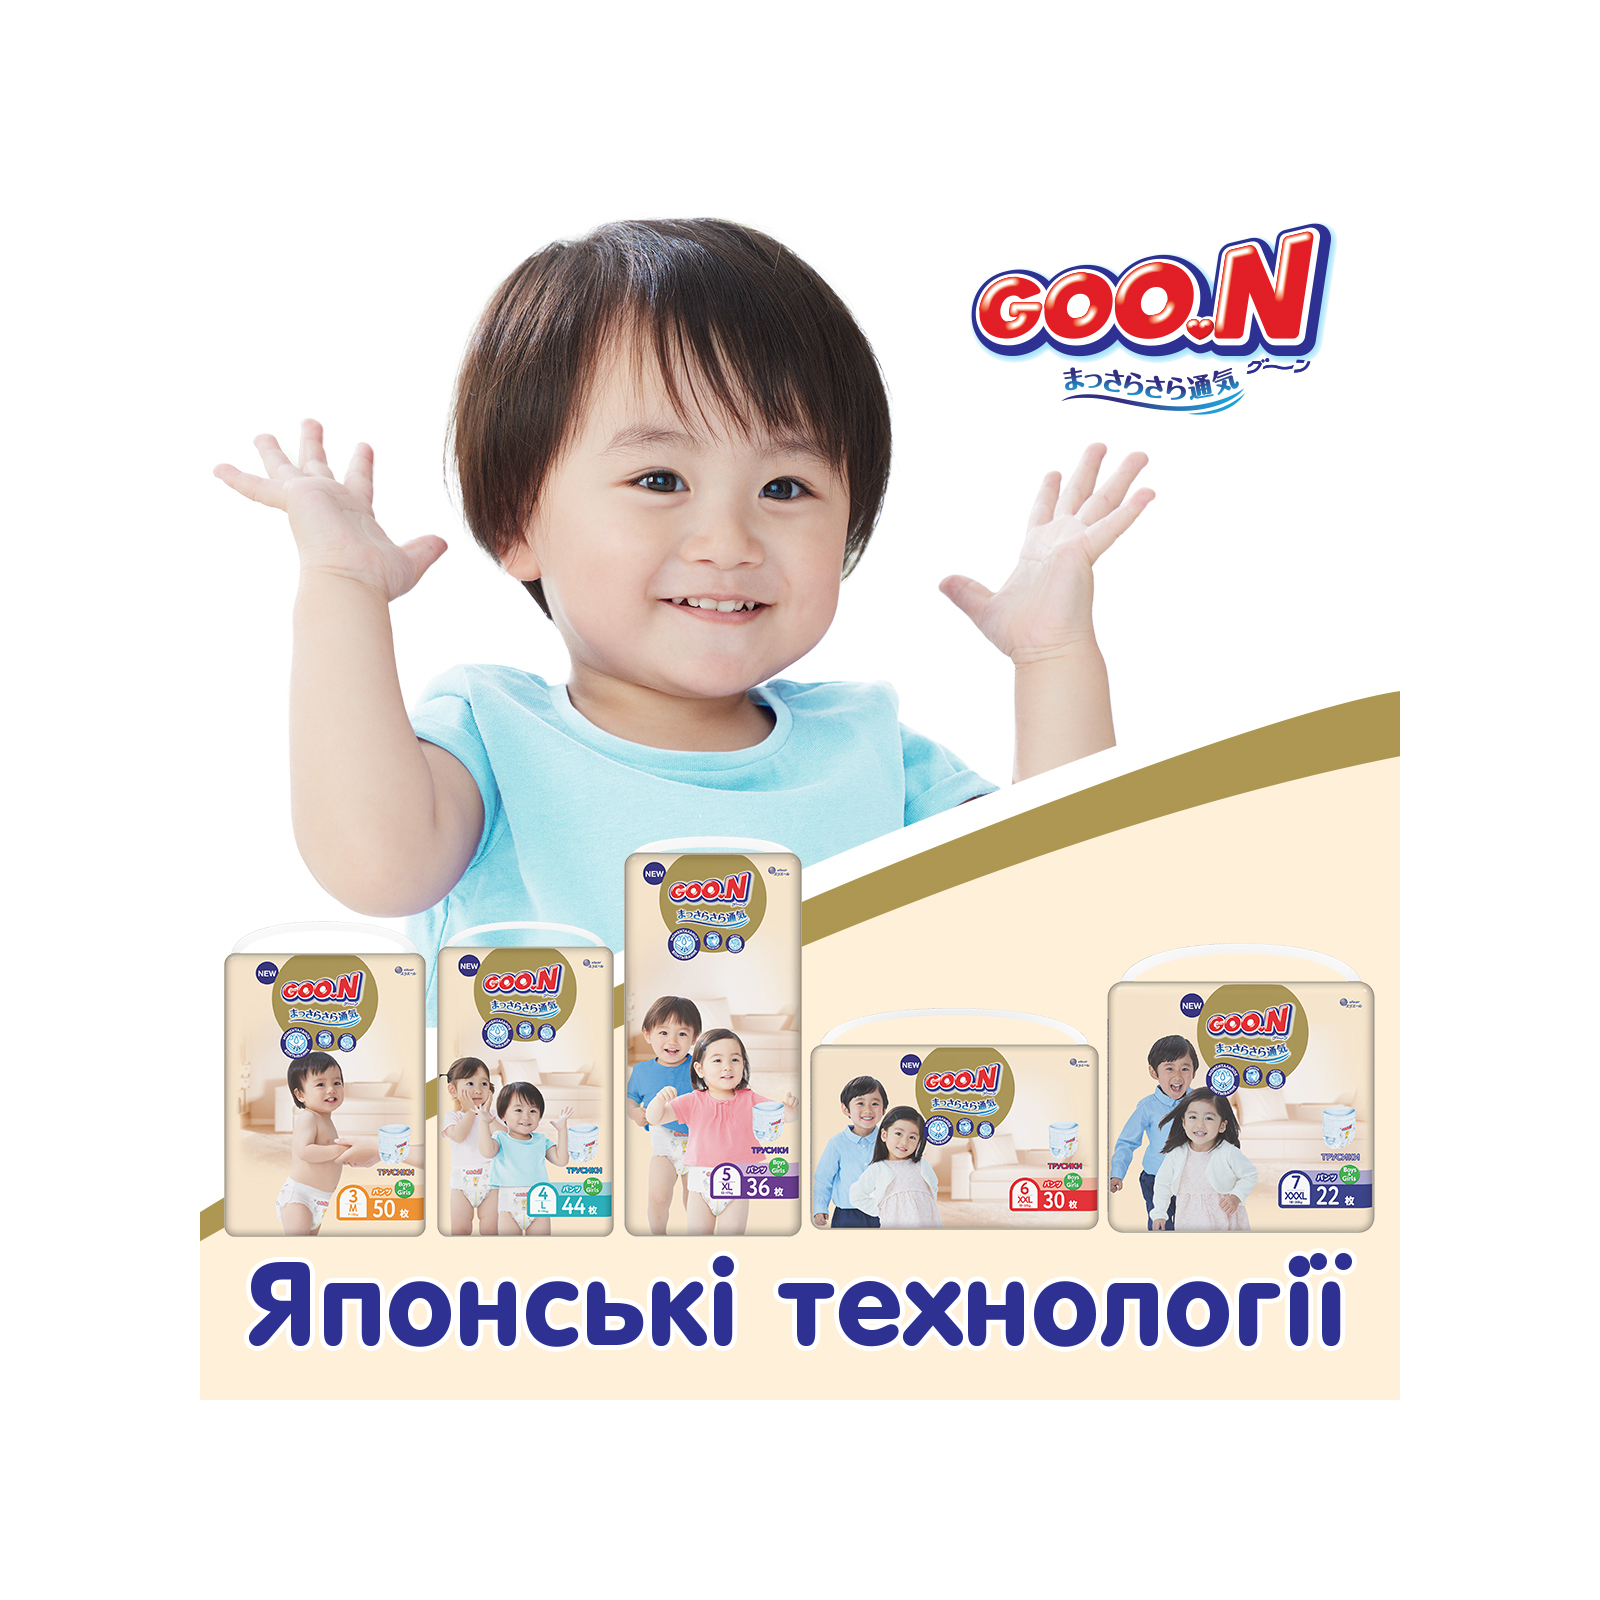 Подгузники GOO.N Premium Soft 12-20 кг размер XL трусики 36 шт. (863229) изображение 10